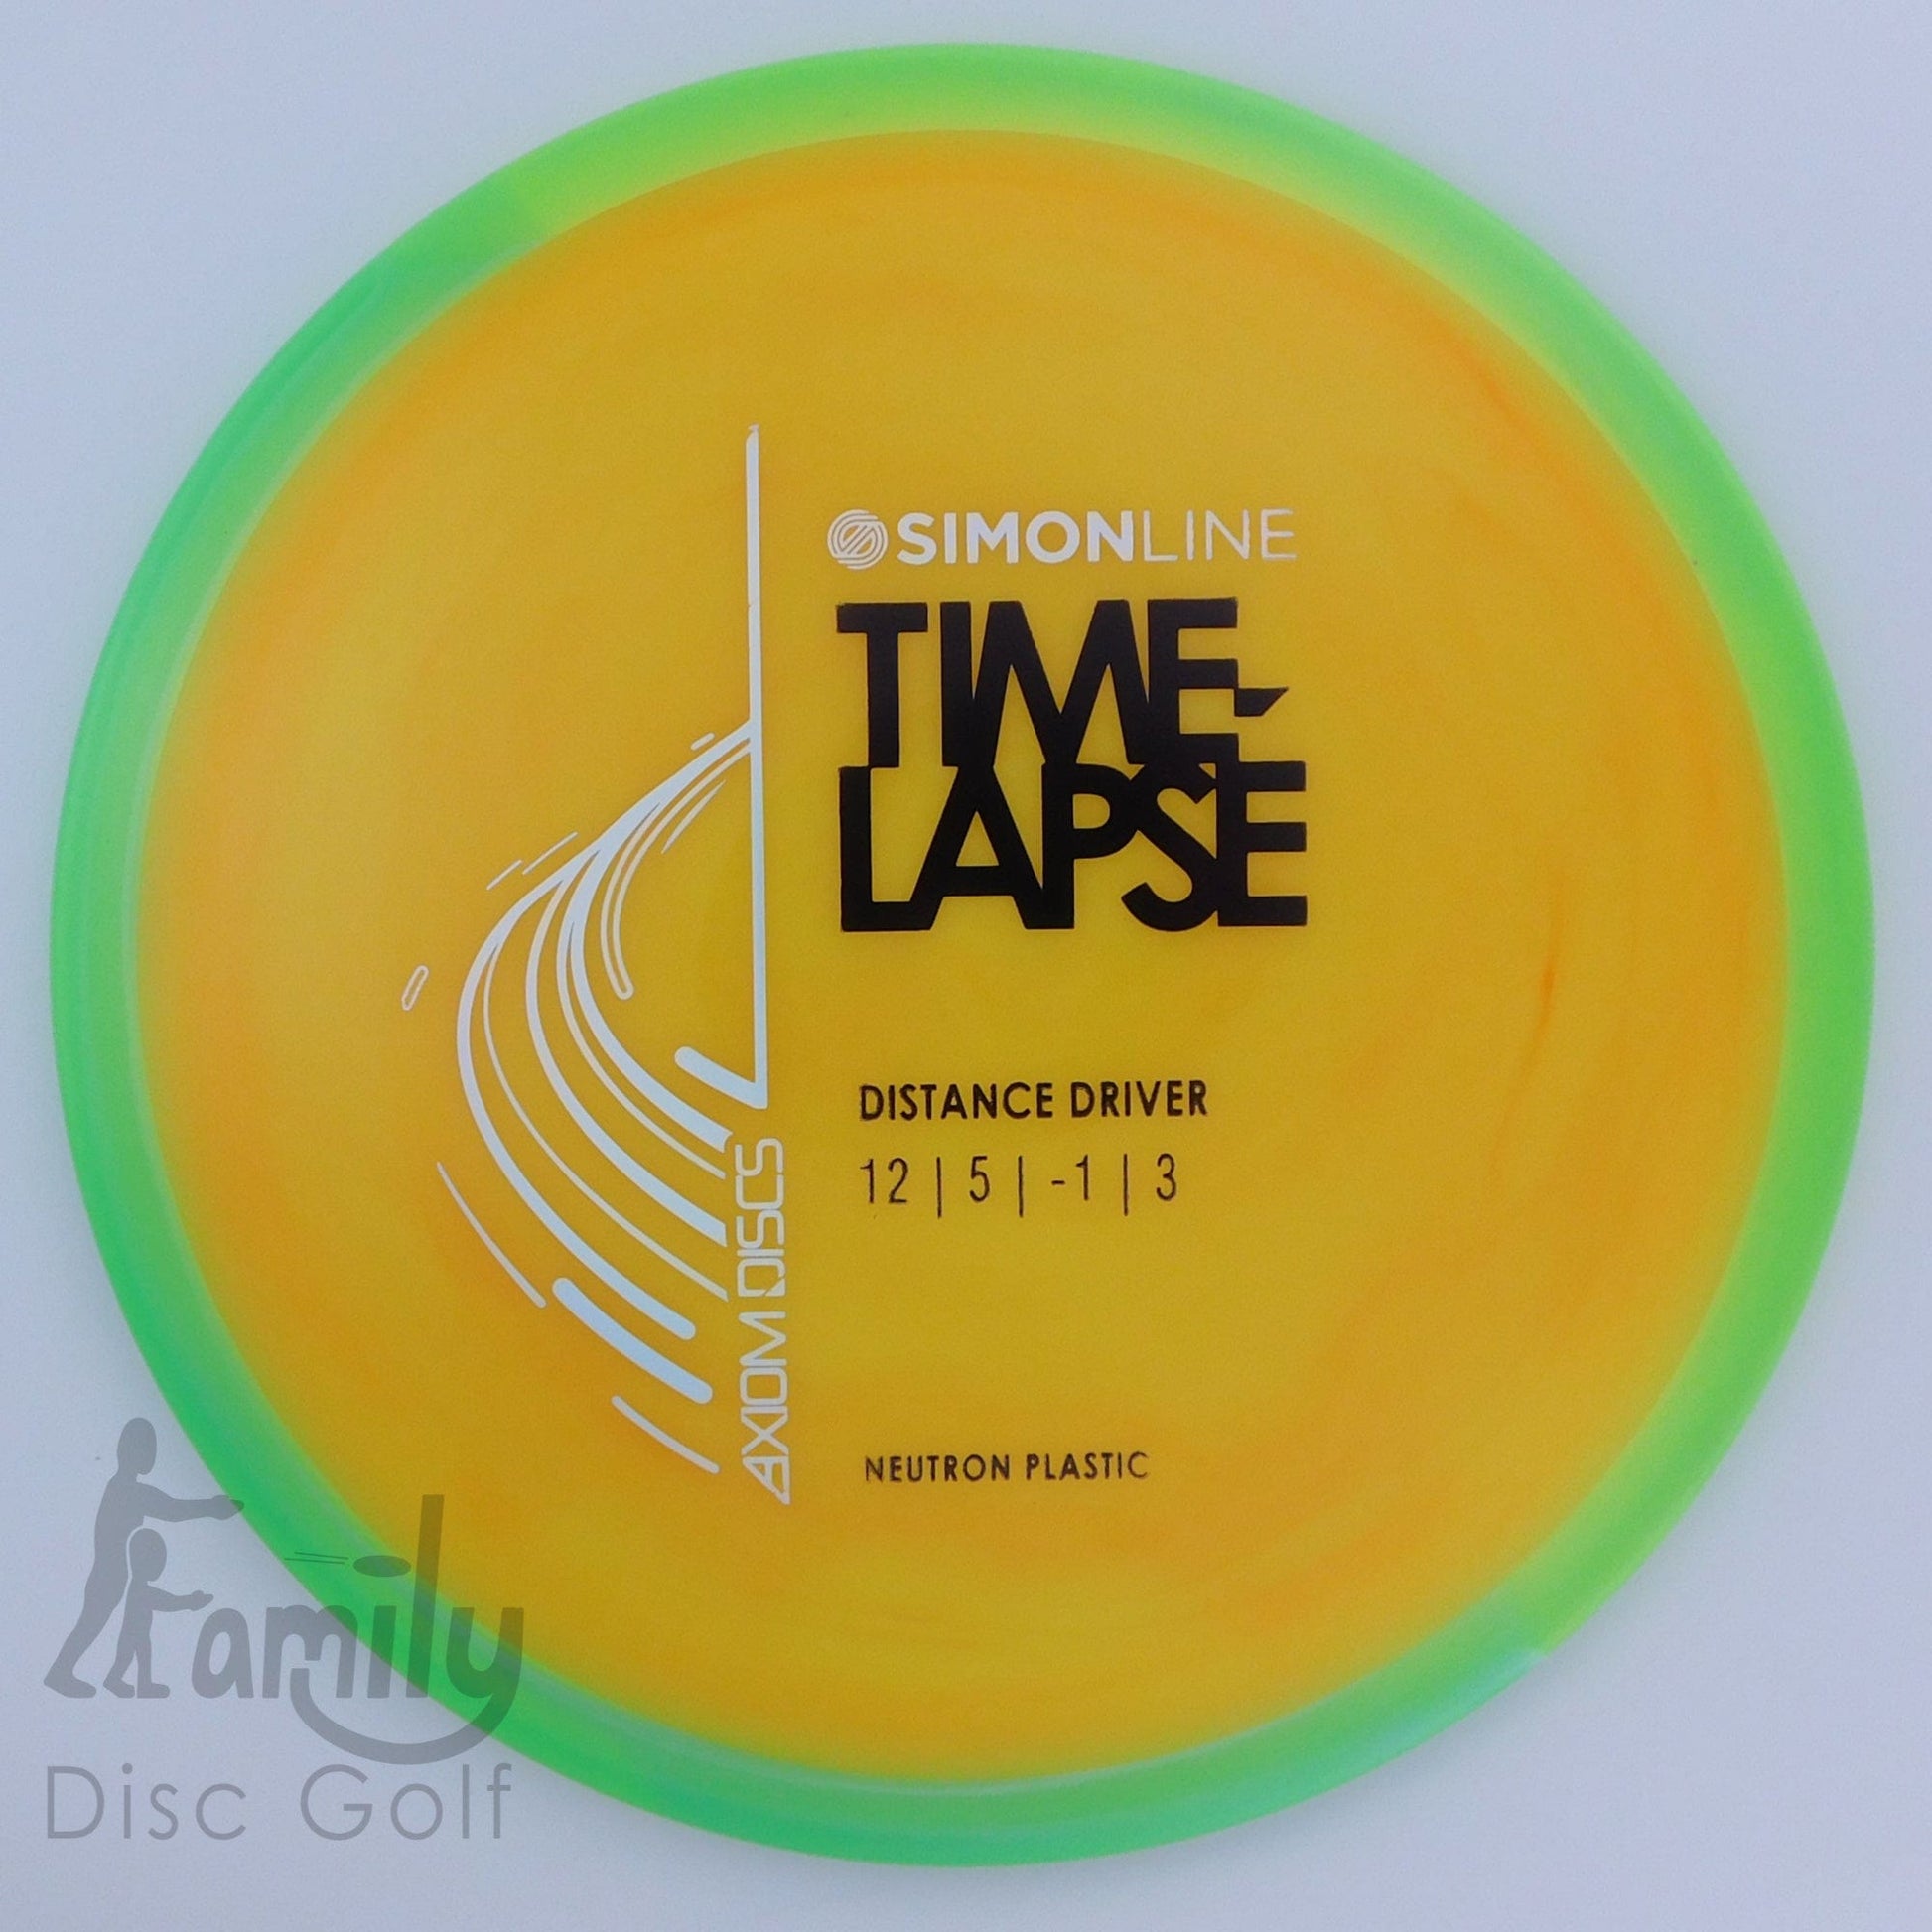 Axiom Time-Lapse - Simon Line - Neutron 12│5│-1│3 172.8g - Orange+Green - Axiom Time Lapse - Neutron - 101761